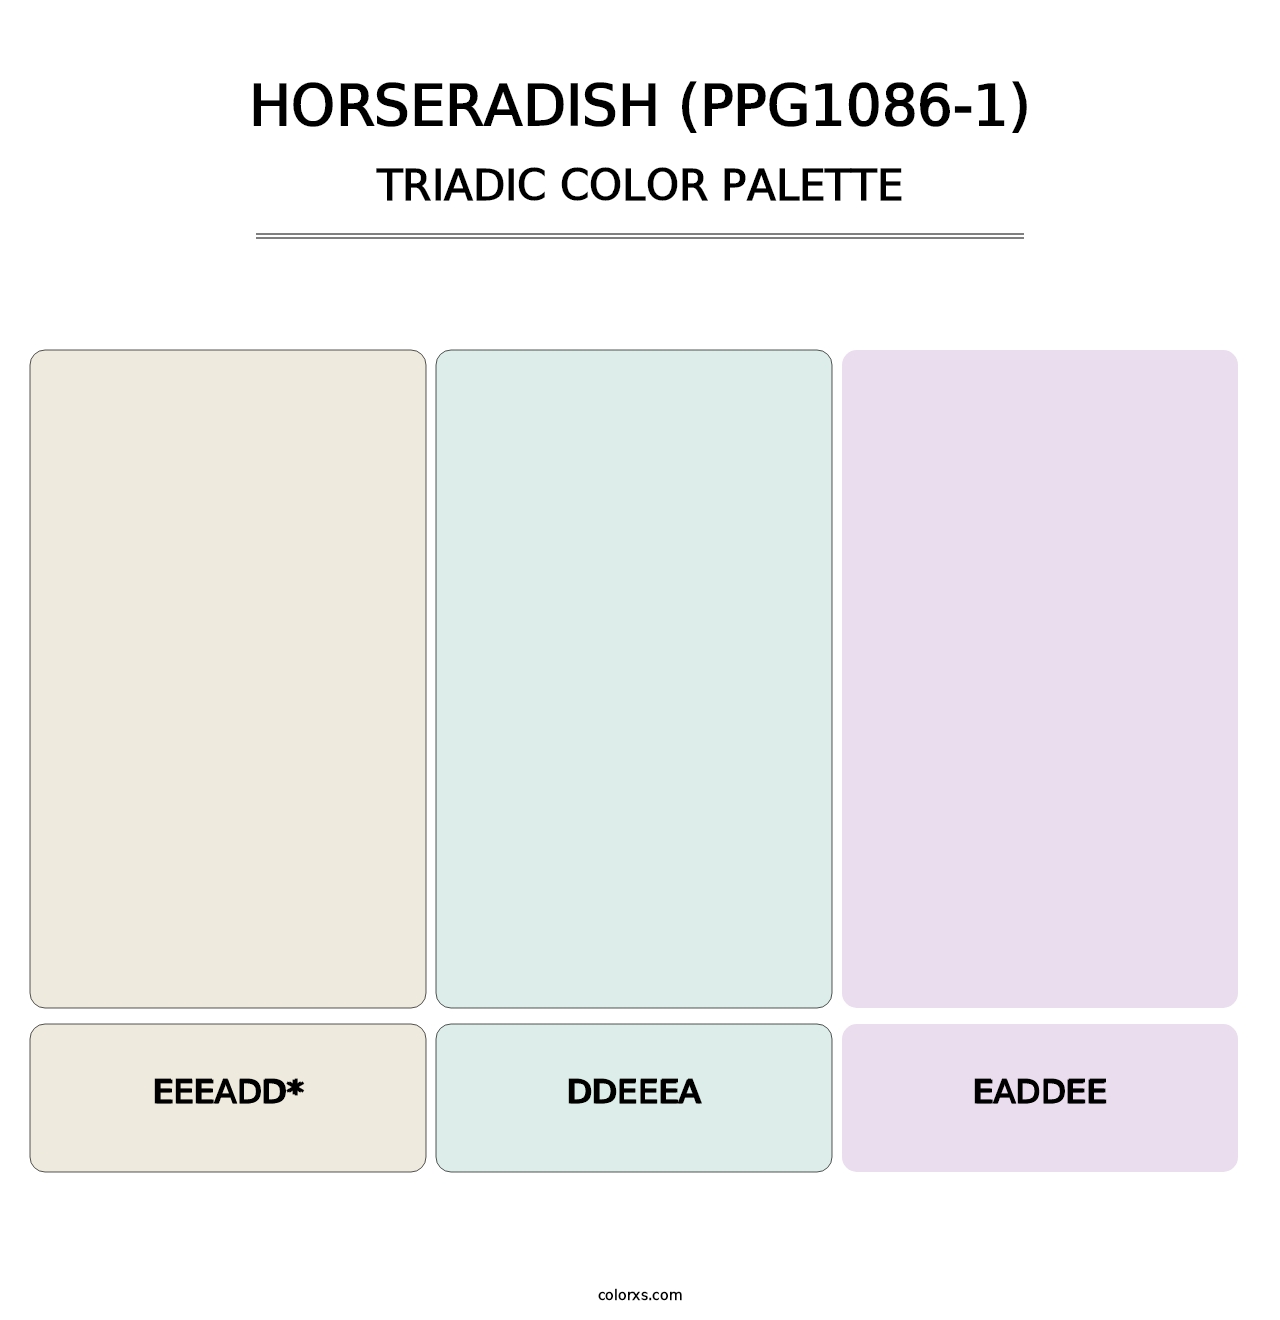 Horseradish (PPG1086-1) - Triadic Color Palette